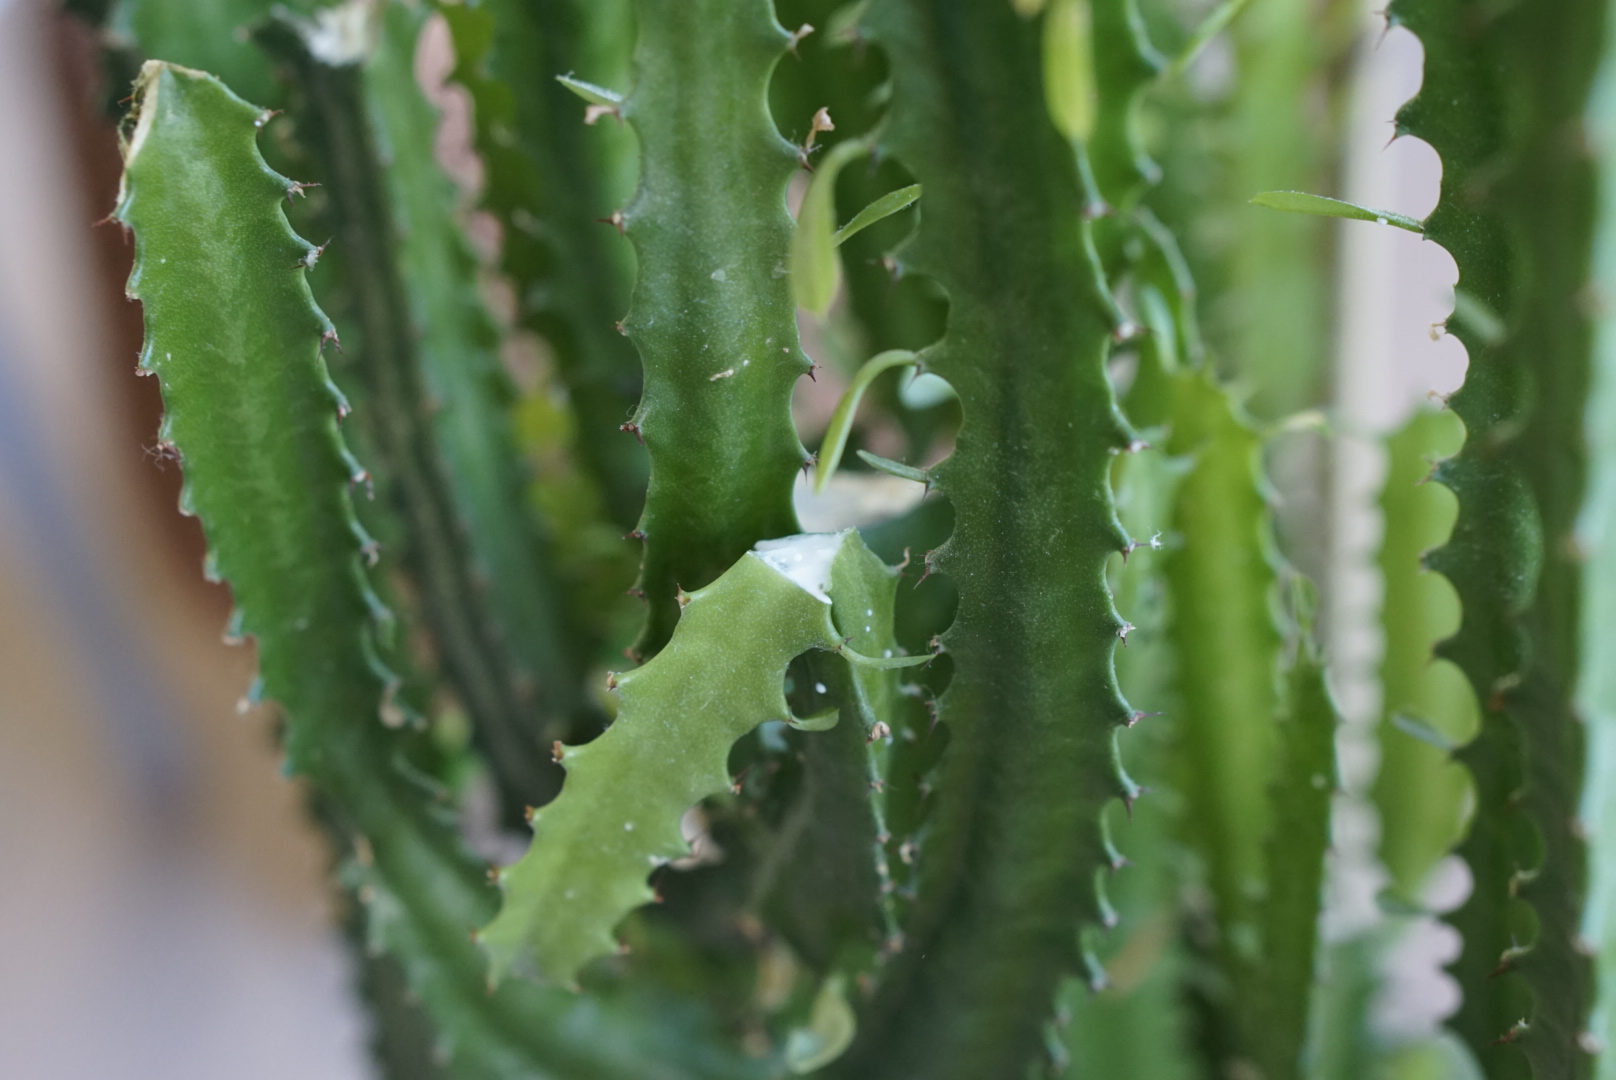 Kaktuslignende plante med grønne loddrette stammer med små blader og pigger